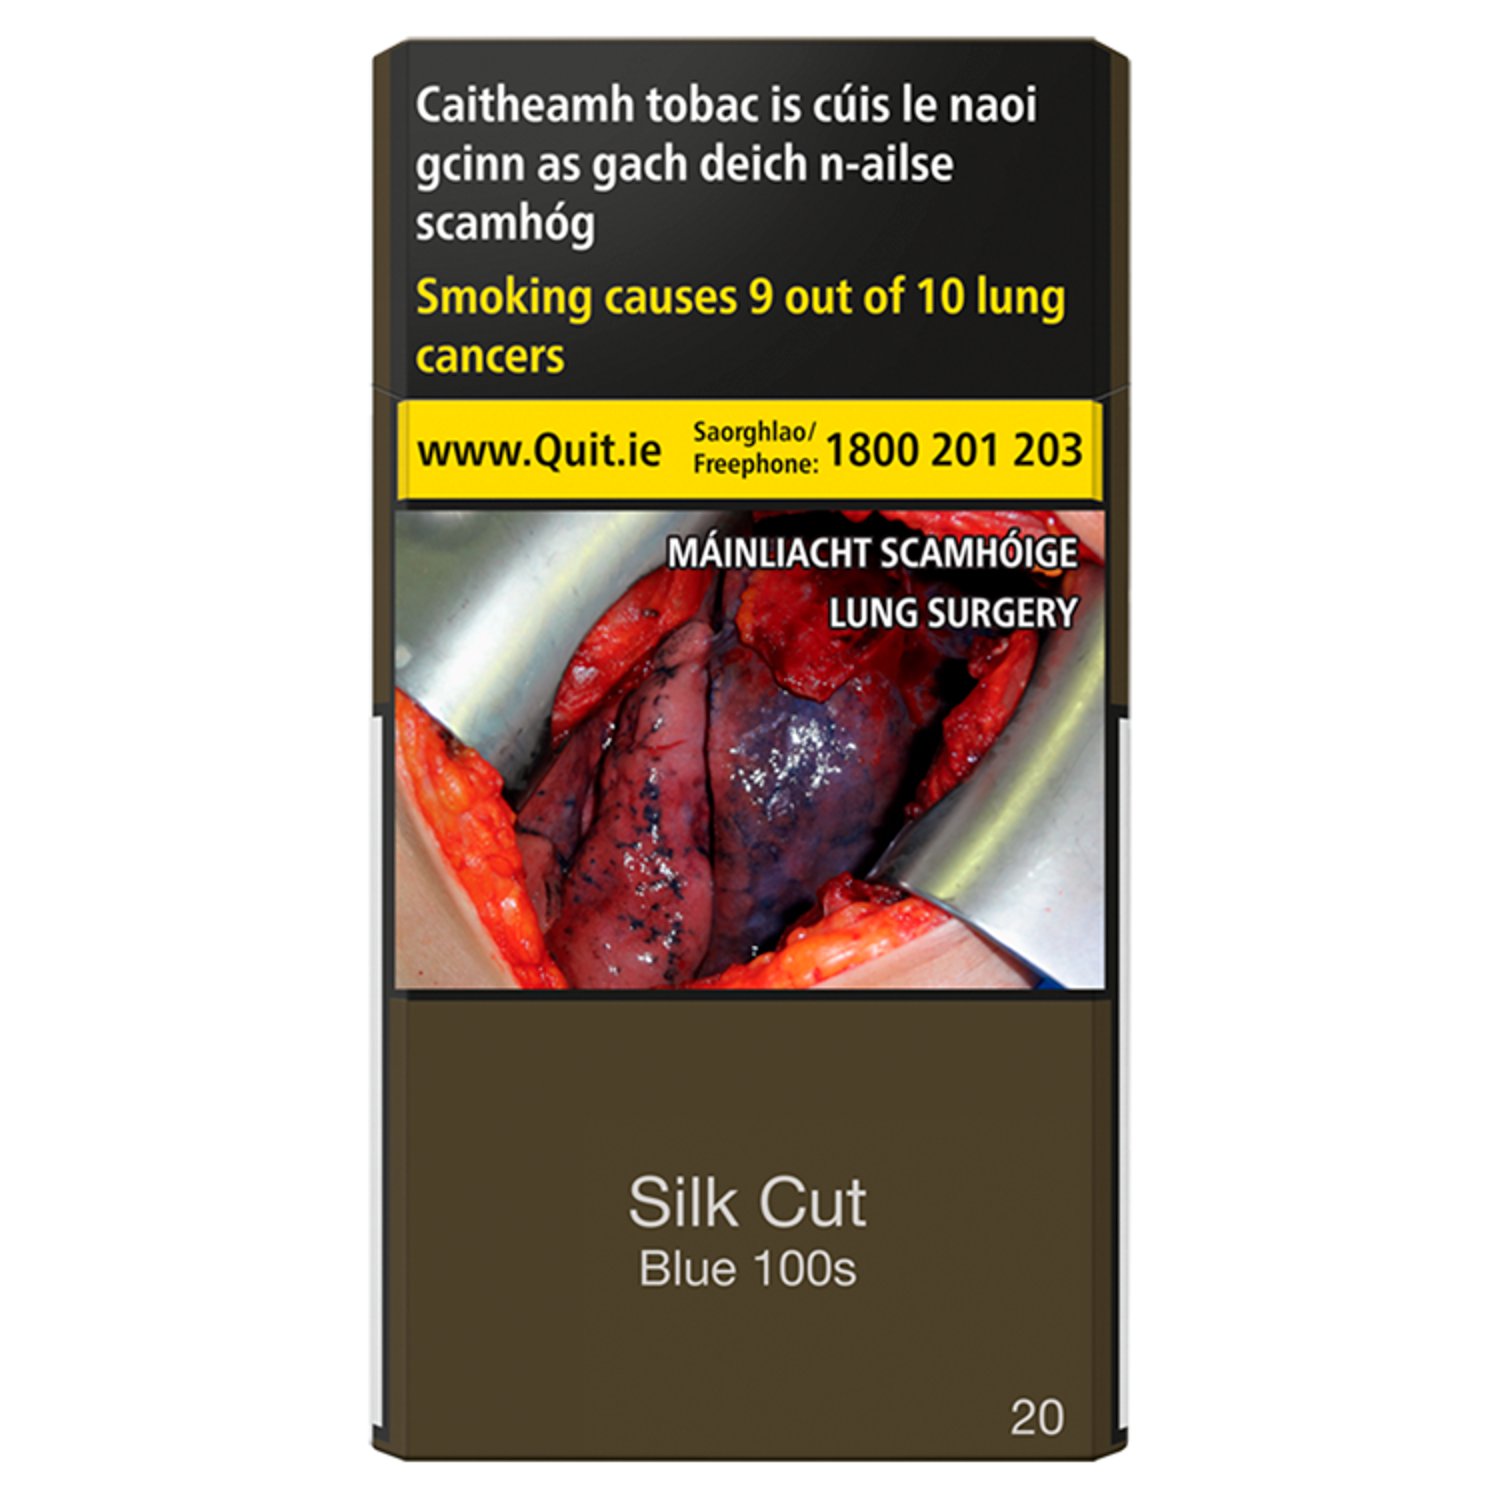 Silk Cut Blue 100s Cigarettes (20 Pack)